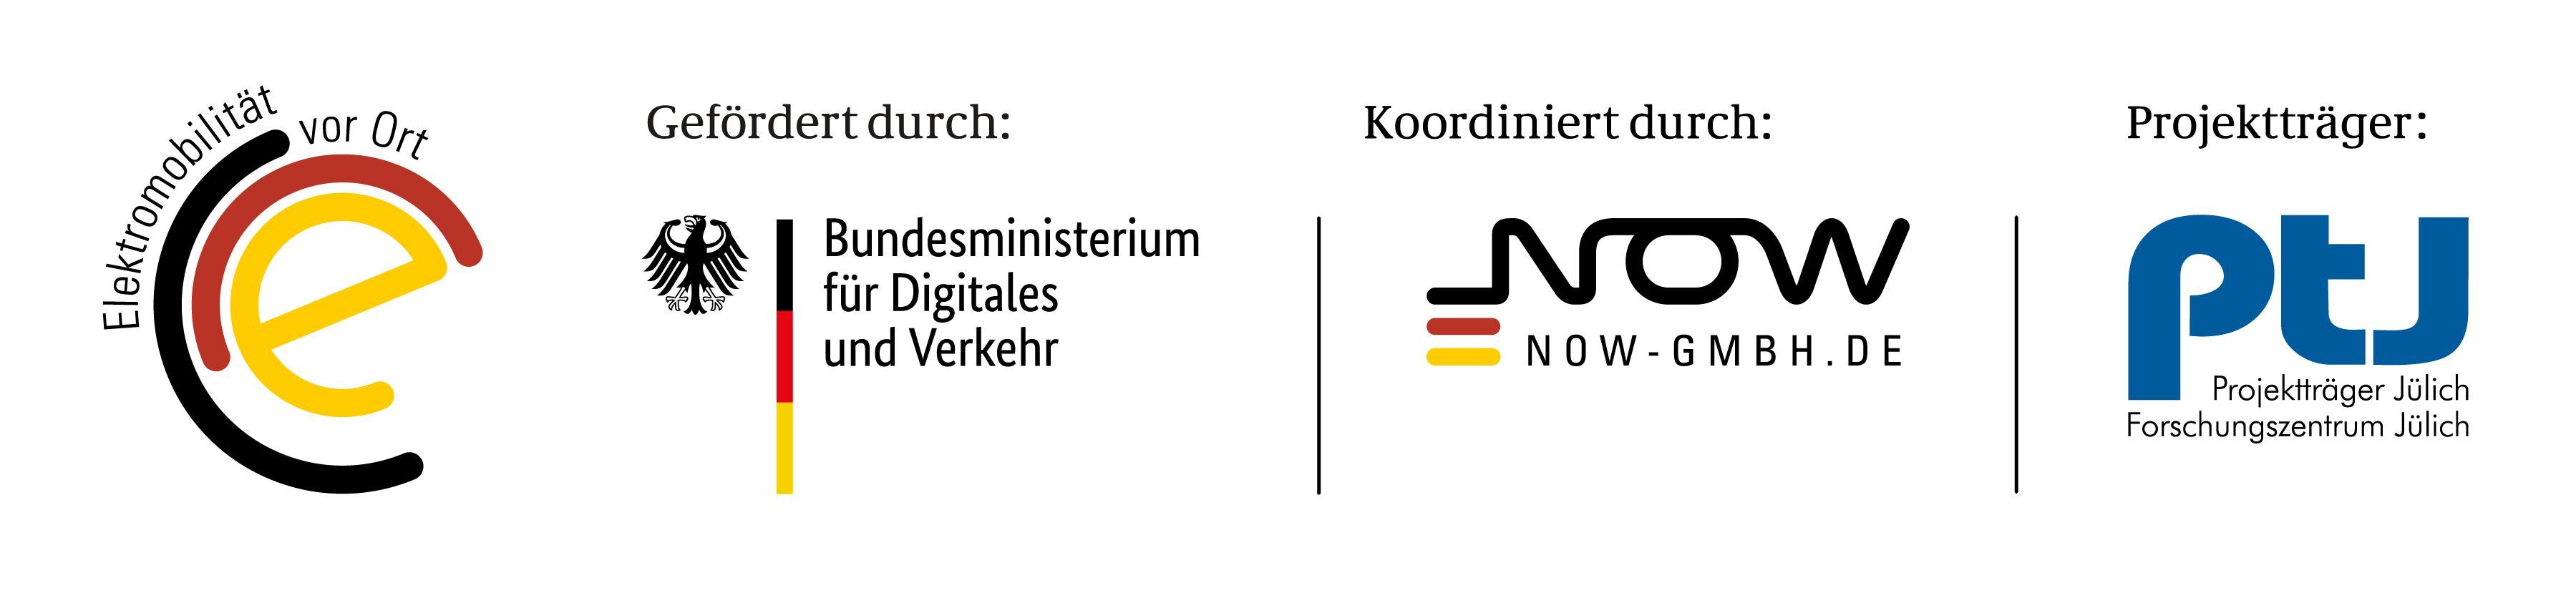 Collage der folgenden vier Logos: "Elektromobilität vor Ort", "Gefördert durch Bundesministerium für Digitales und Verkehr", "Koordinidert durch NOW-GmbH.de", "Projektträger Jülich: Forschungszentrum Jülich"